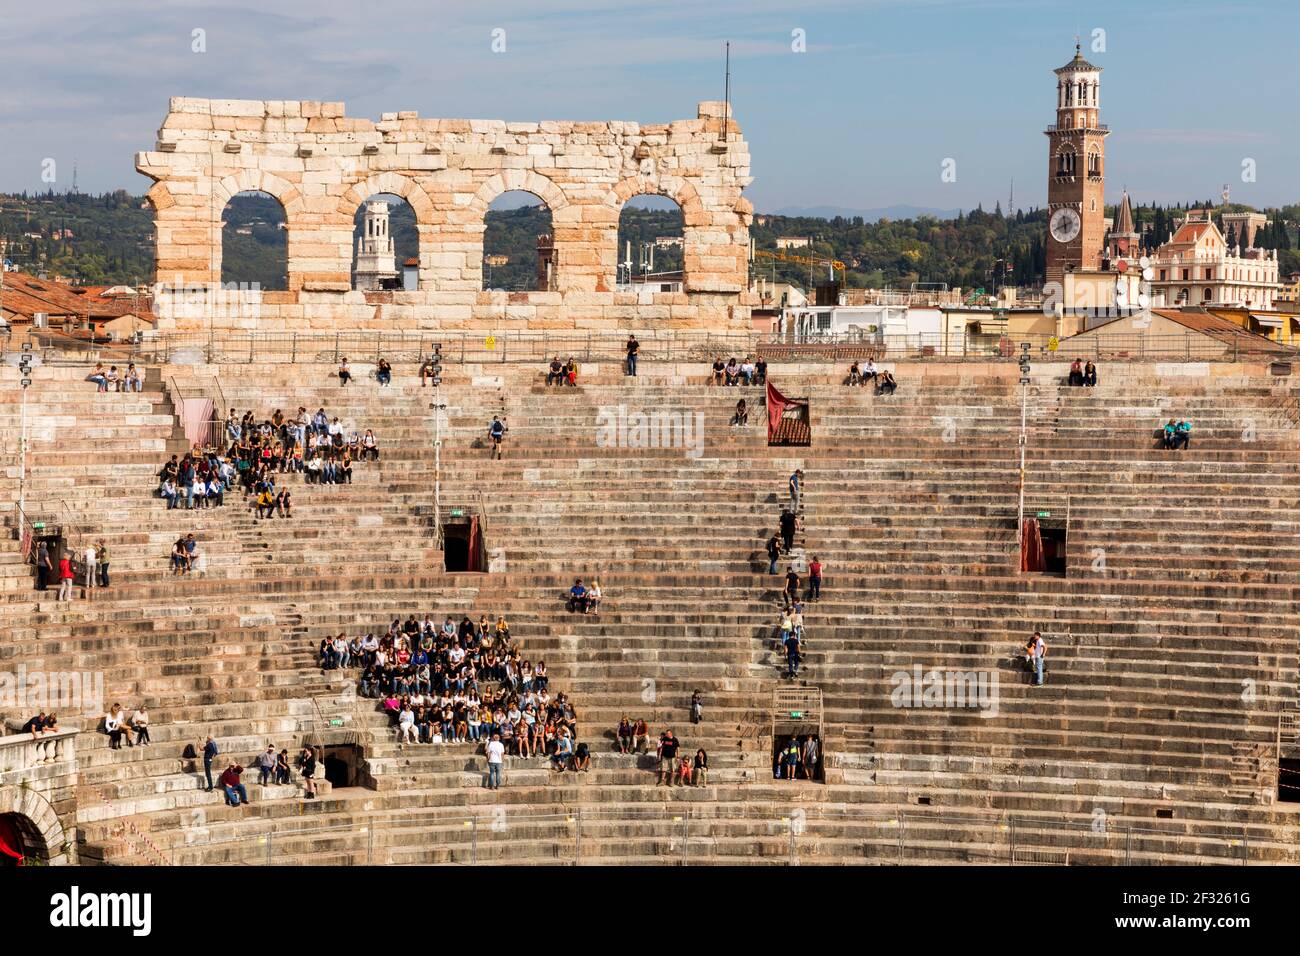 Italien, Verona, die Arena, das Amphitheater von Verona, fertiggestellt um 30 n. Chr., drittgrößte der Welt, für Scheinschlachten, Gladiatorenkämpfe, Publi verwendet Stockfoto